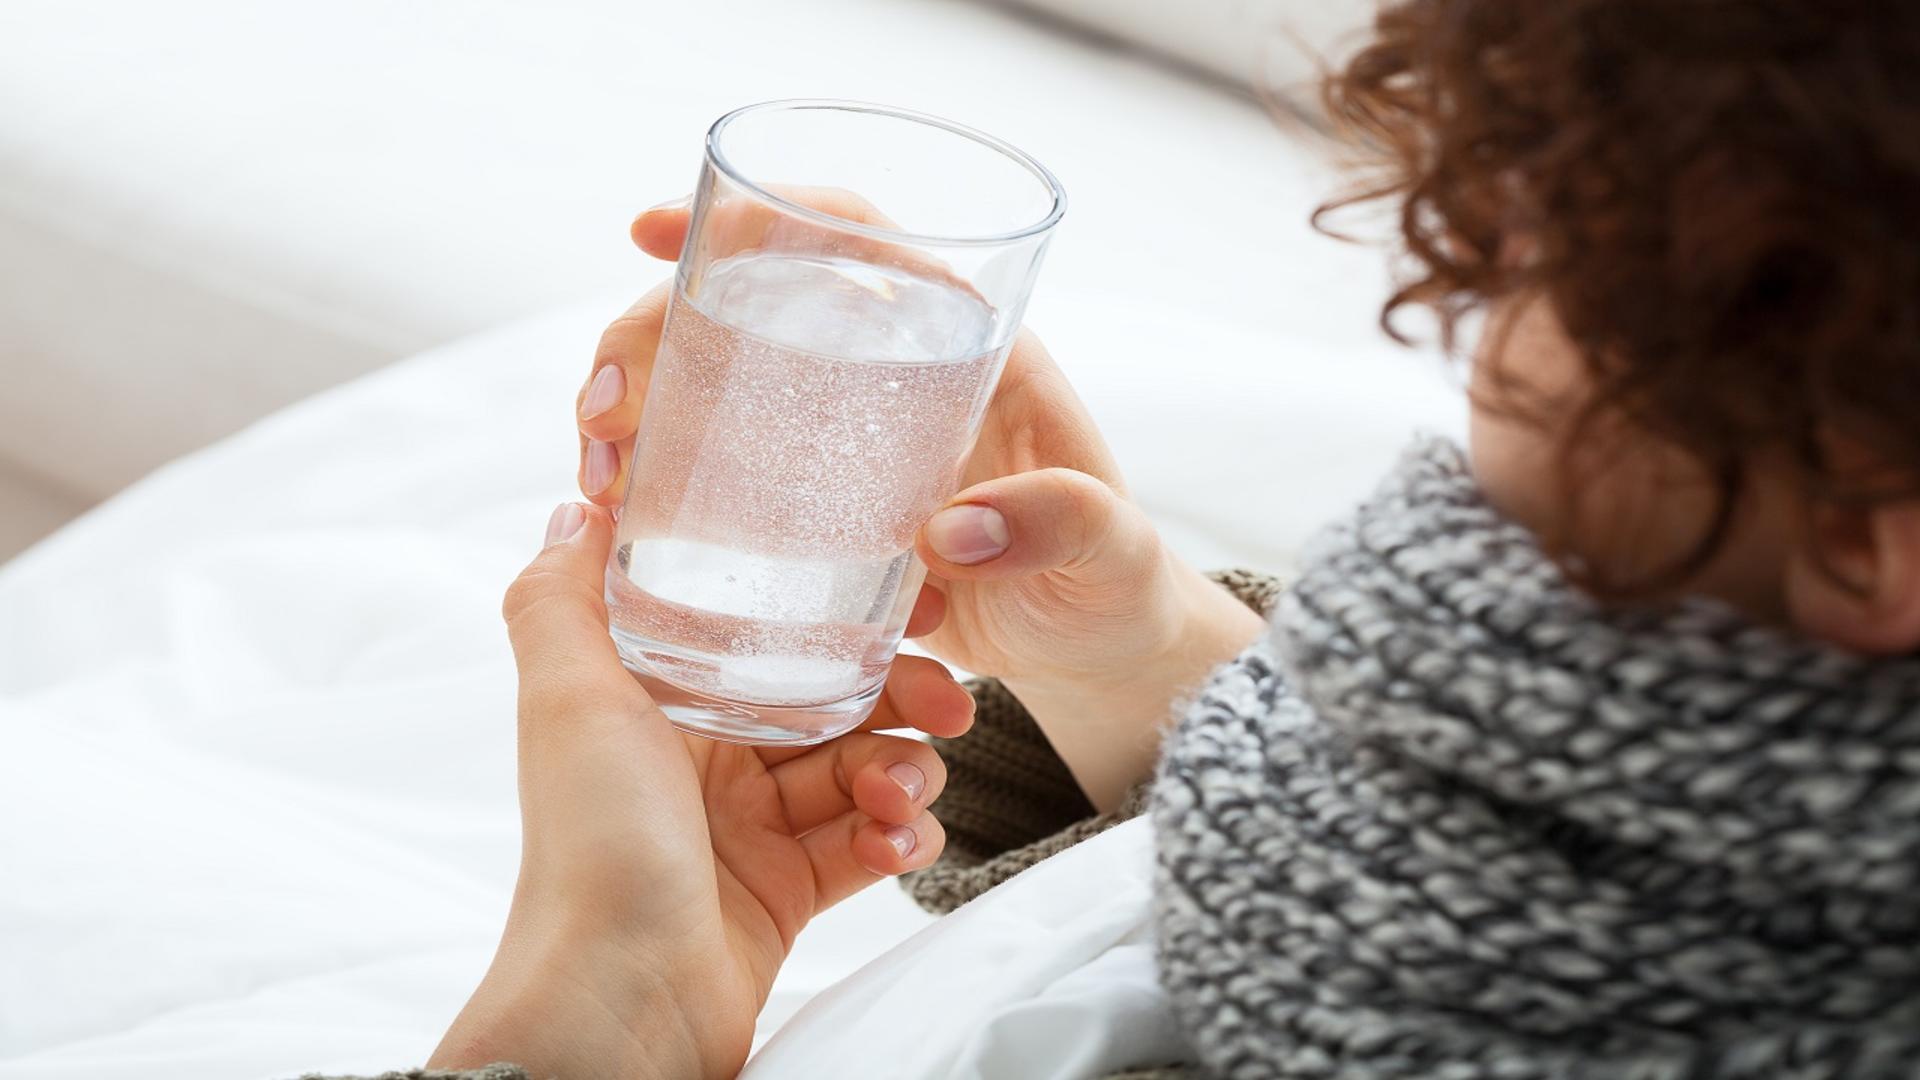 Știi câtă apă e bine să bei iarna, chiar dacă nu ți-e sete? 4 trucuri pentru o bună hidratare - Sănătatea ta depinde de asta